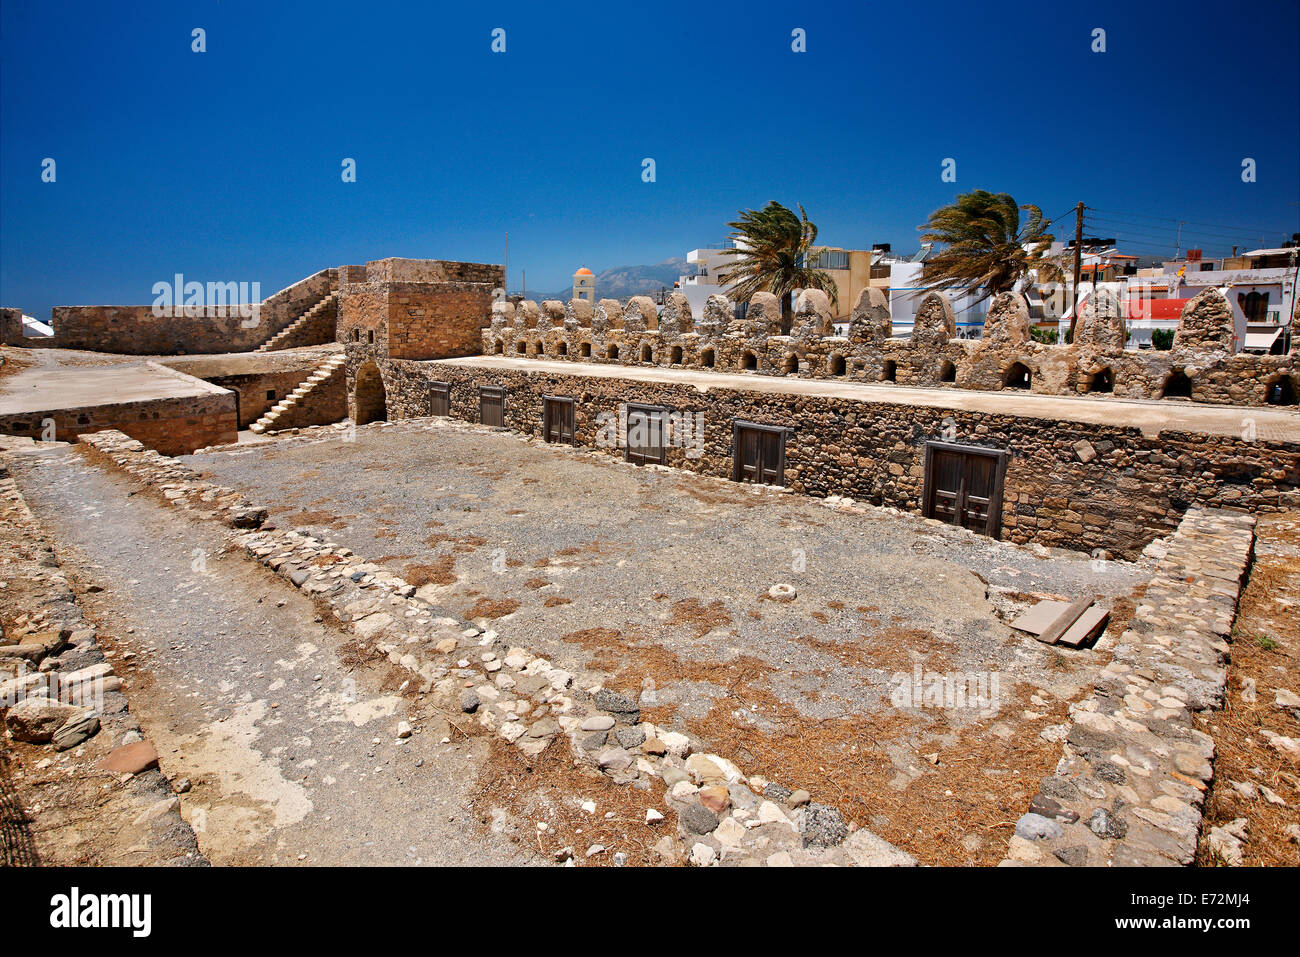 Innenansicht der alten, venezianischen Burg von Ierapetra Stadt, bekannt durch seinen türkischen Namen 'Kales'. Lassithi, Kreta, Griechenland Stockfoto